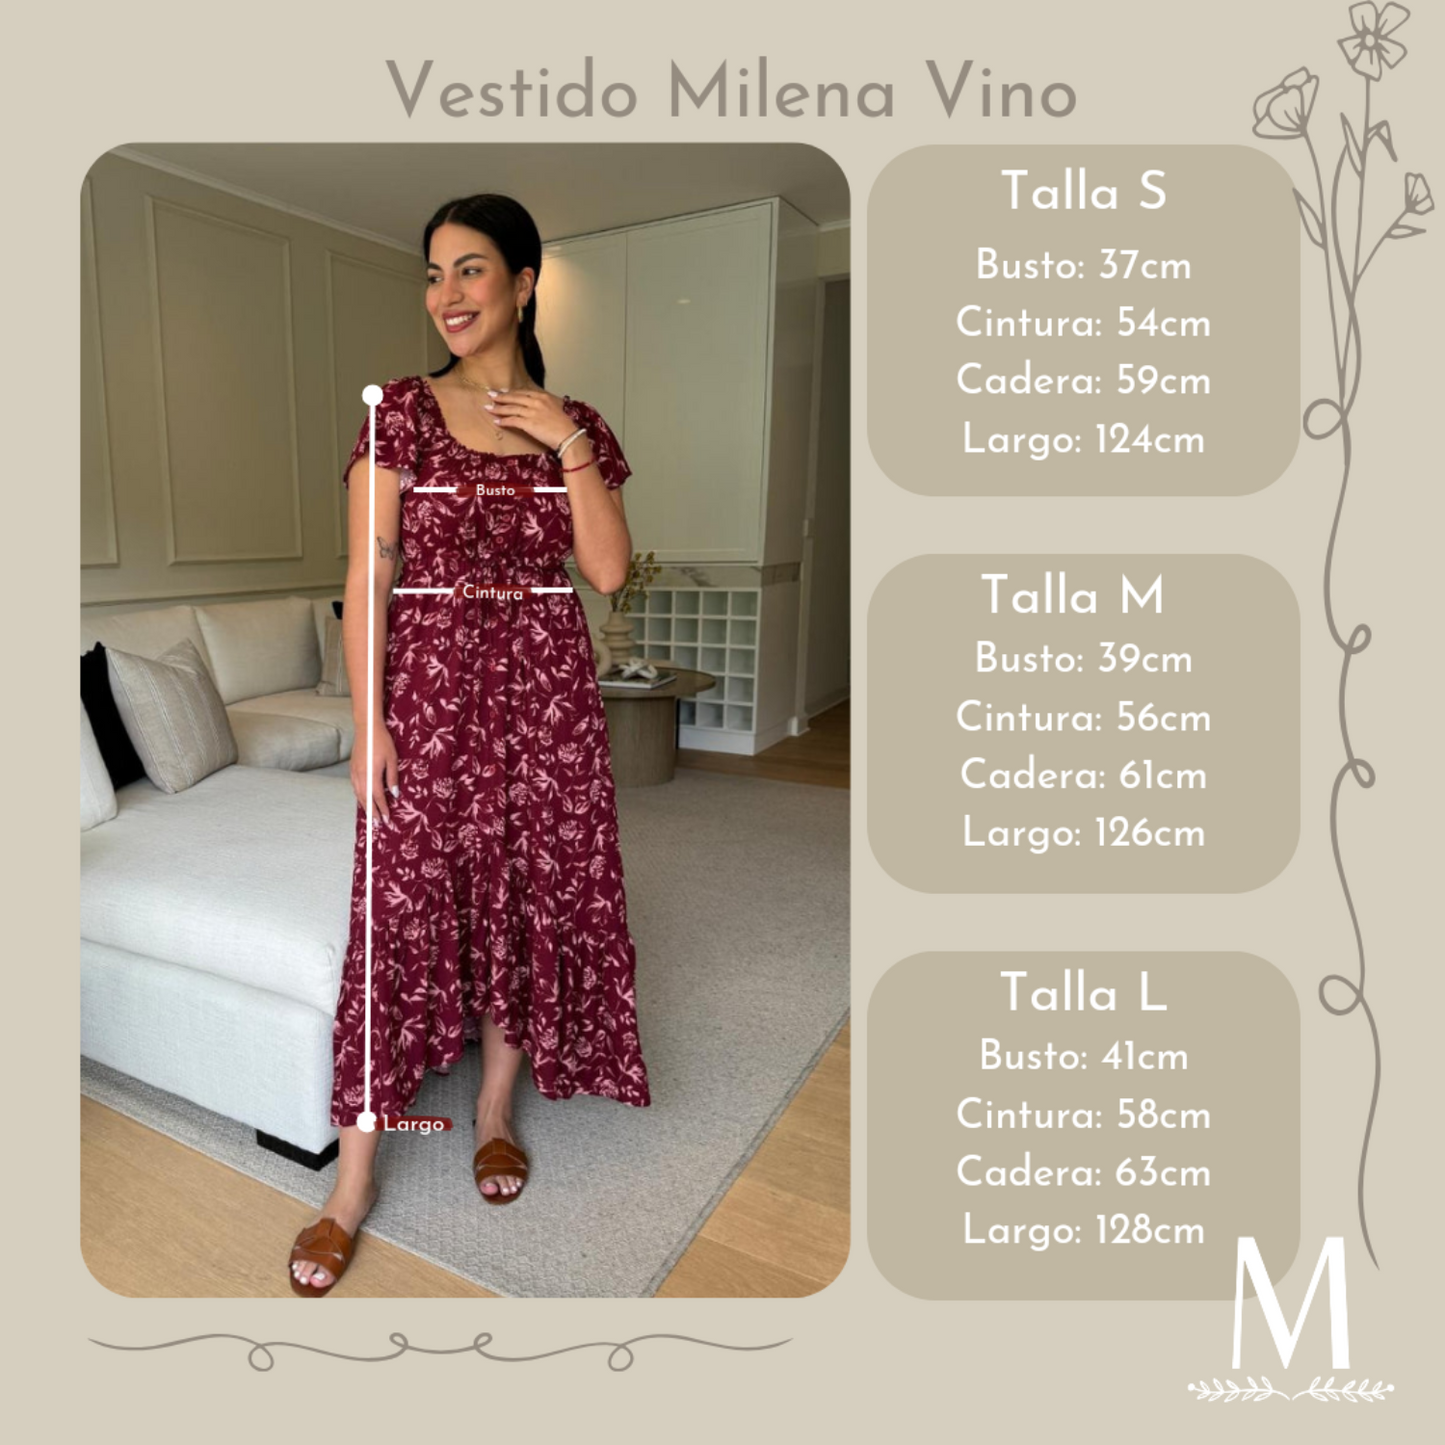 Vestido Milena vino